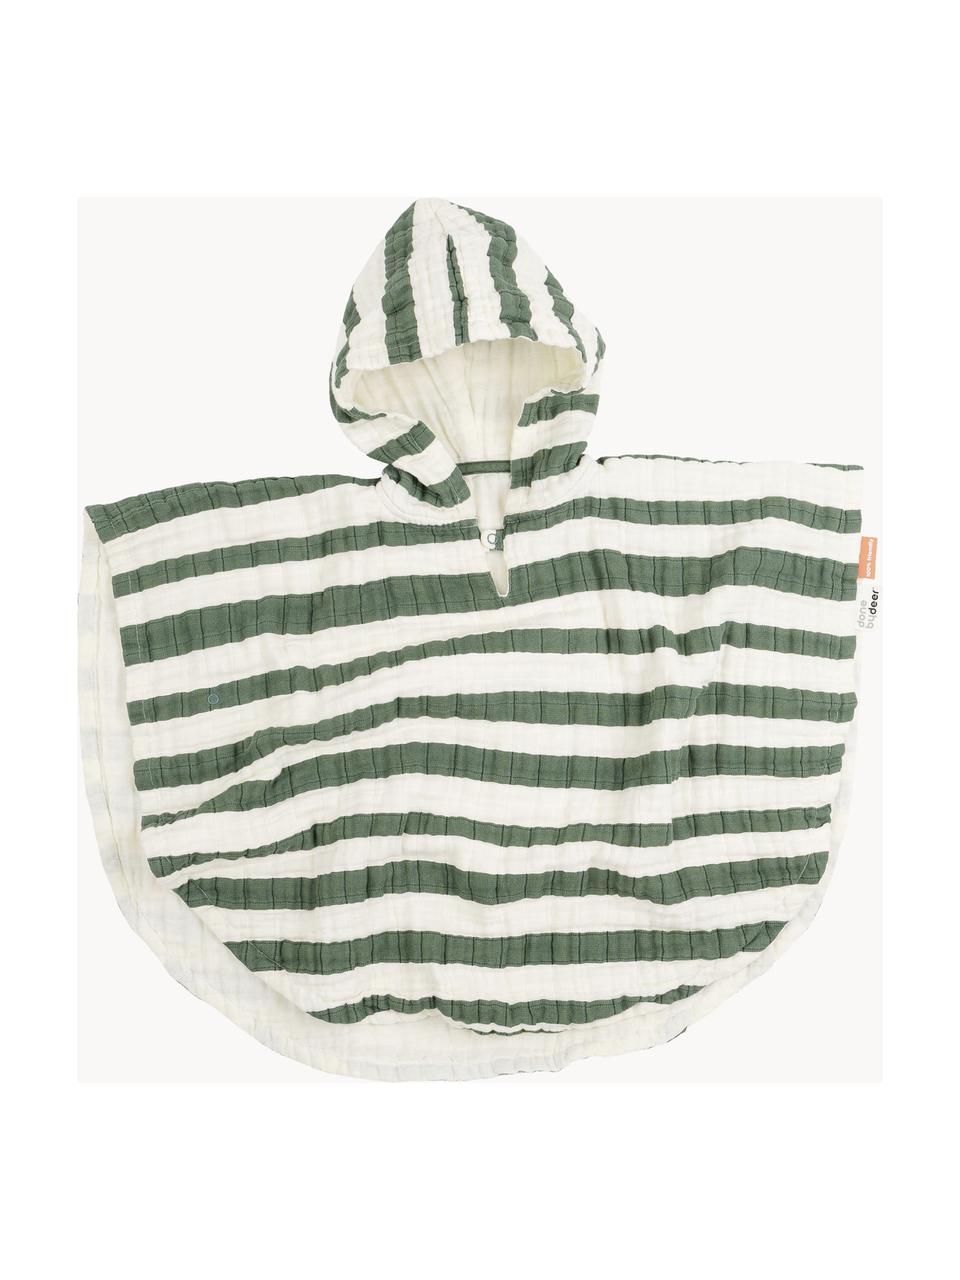 Poncho kąpielowe z bawełny organicznej Stripes, 100% bawełna organiczna z certyfikatem GOTS, Zielony, kremowobiały, S 67 x D 50 cm